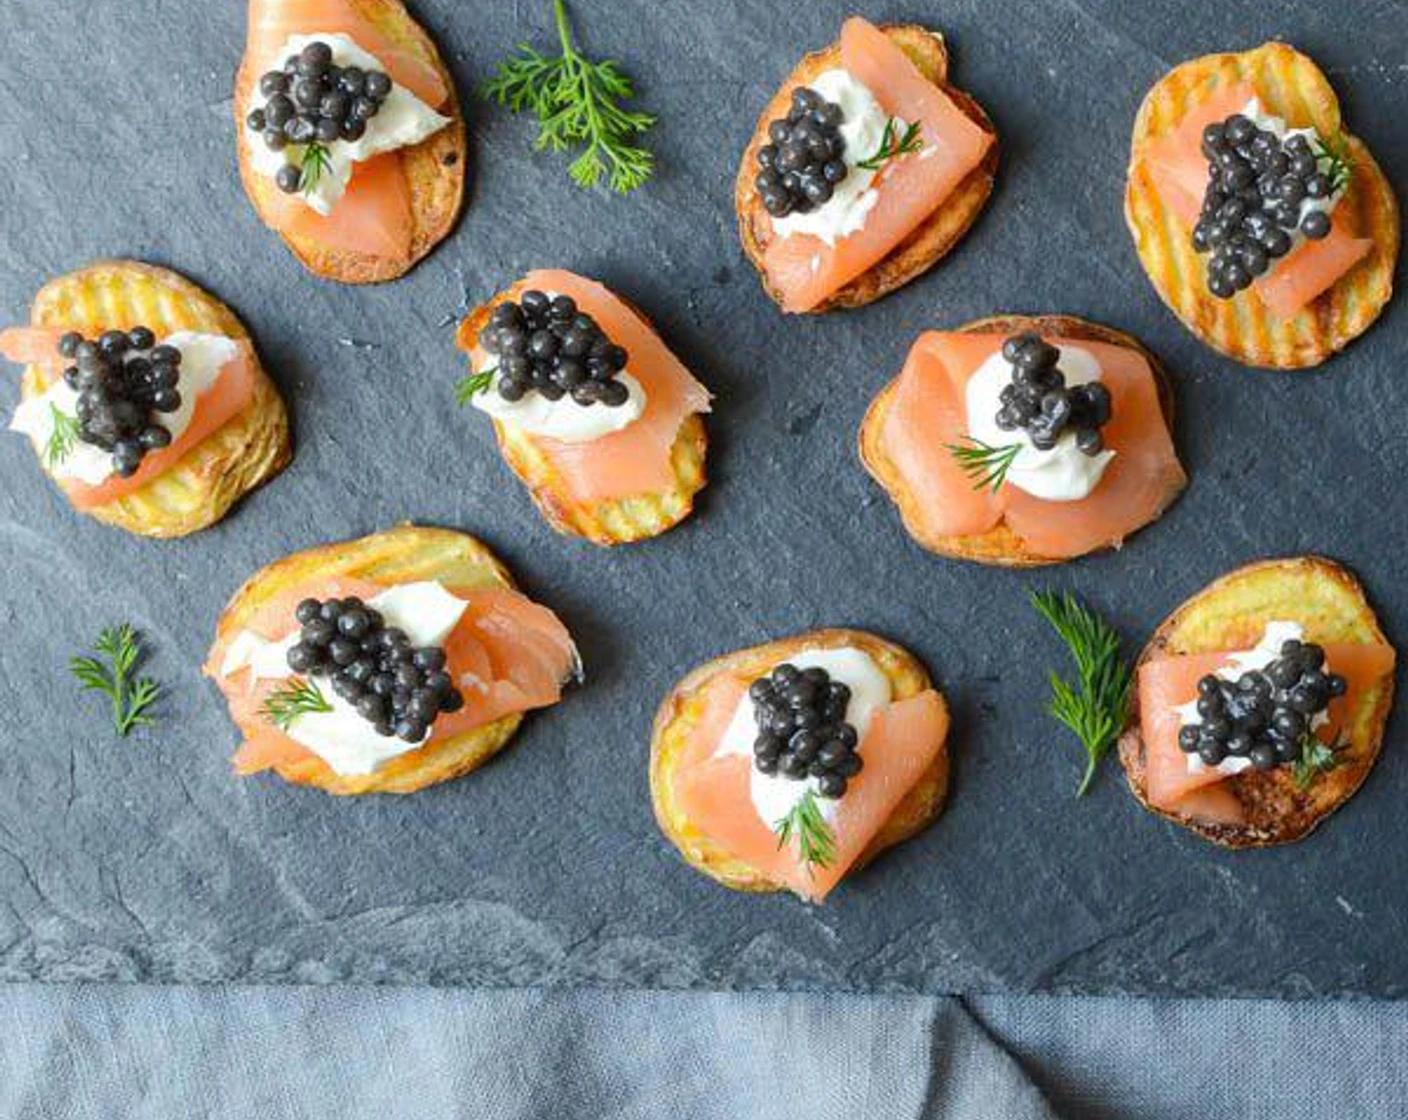 smoked salmon caviar - Is salmon caviar good